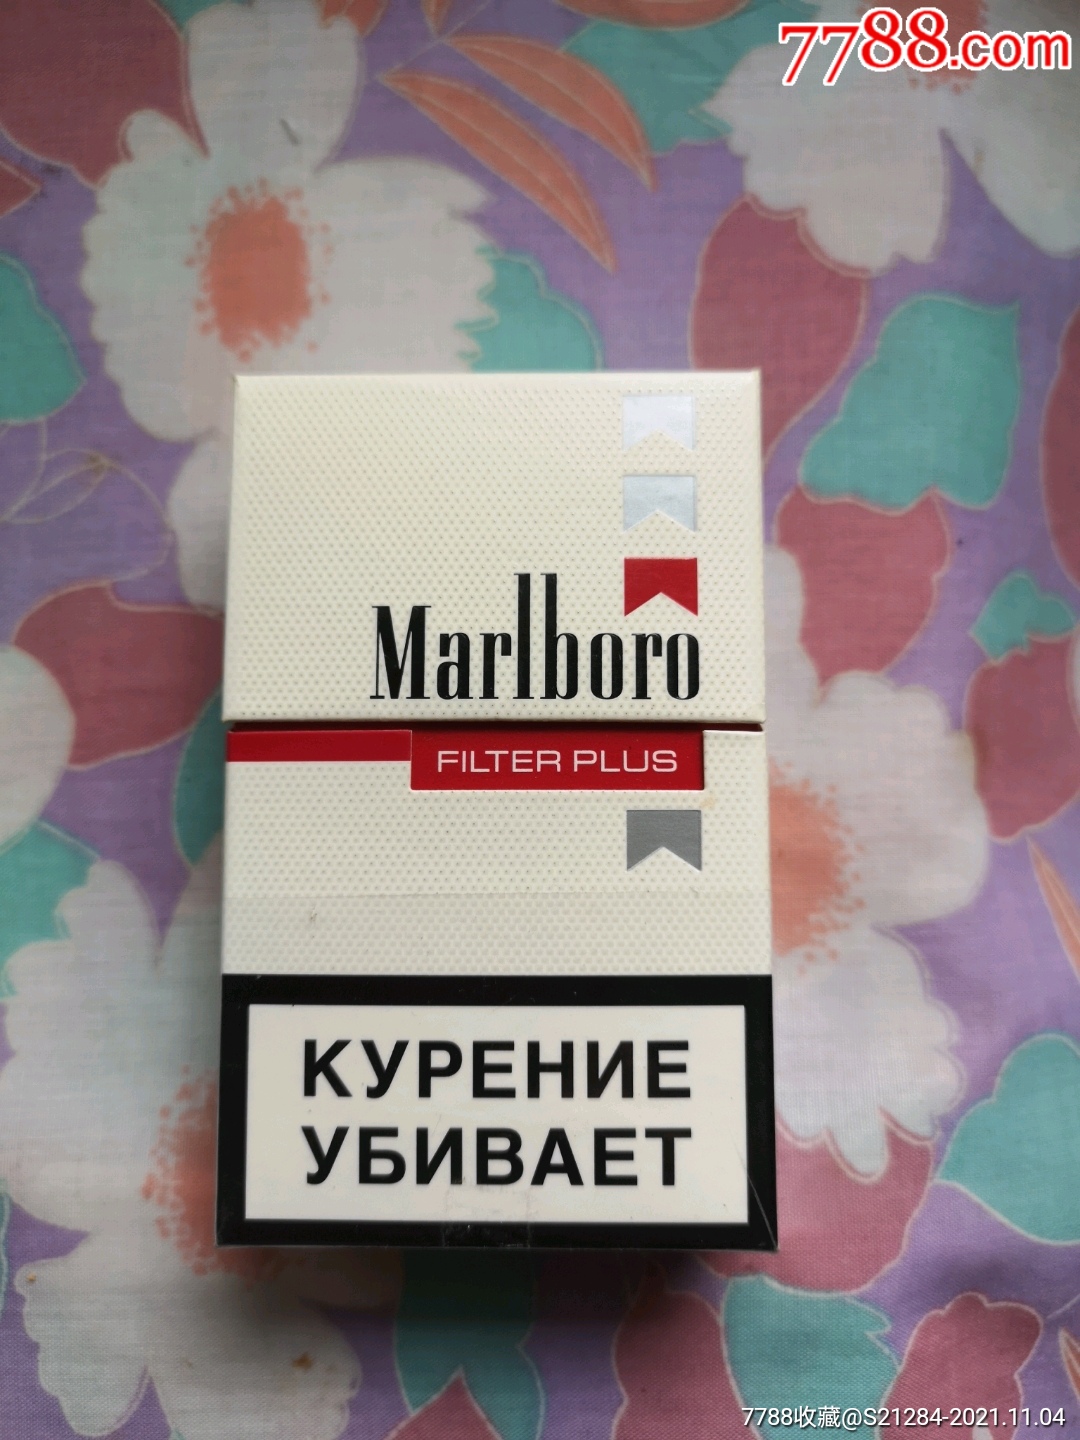 marlboro香烟价格表图片